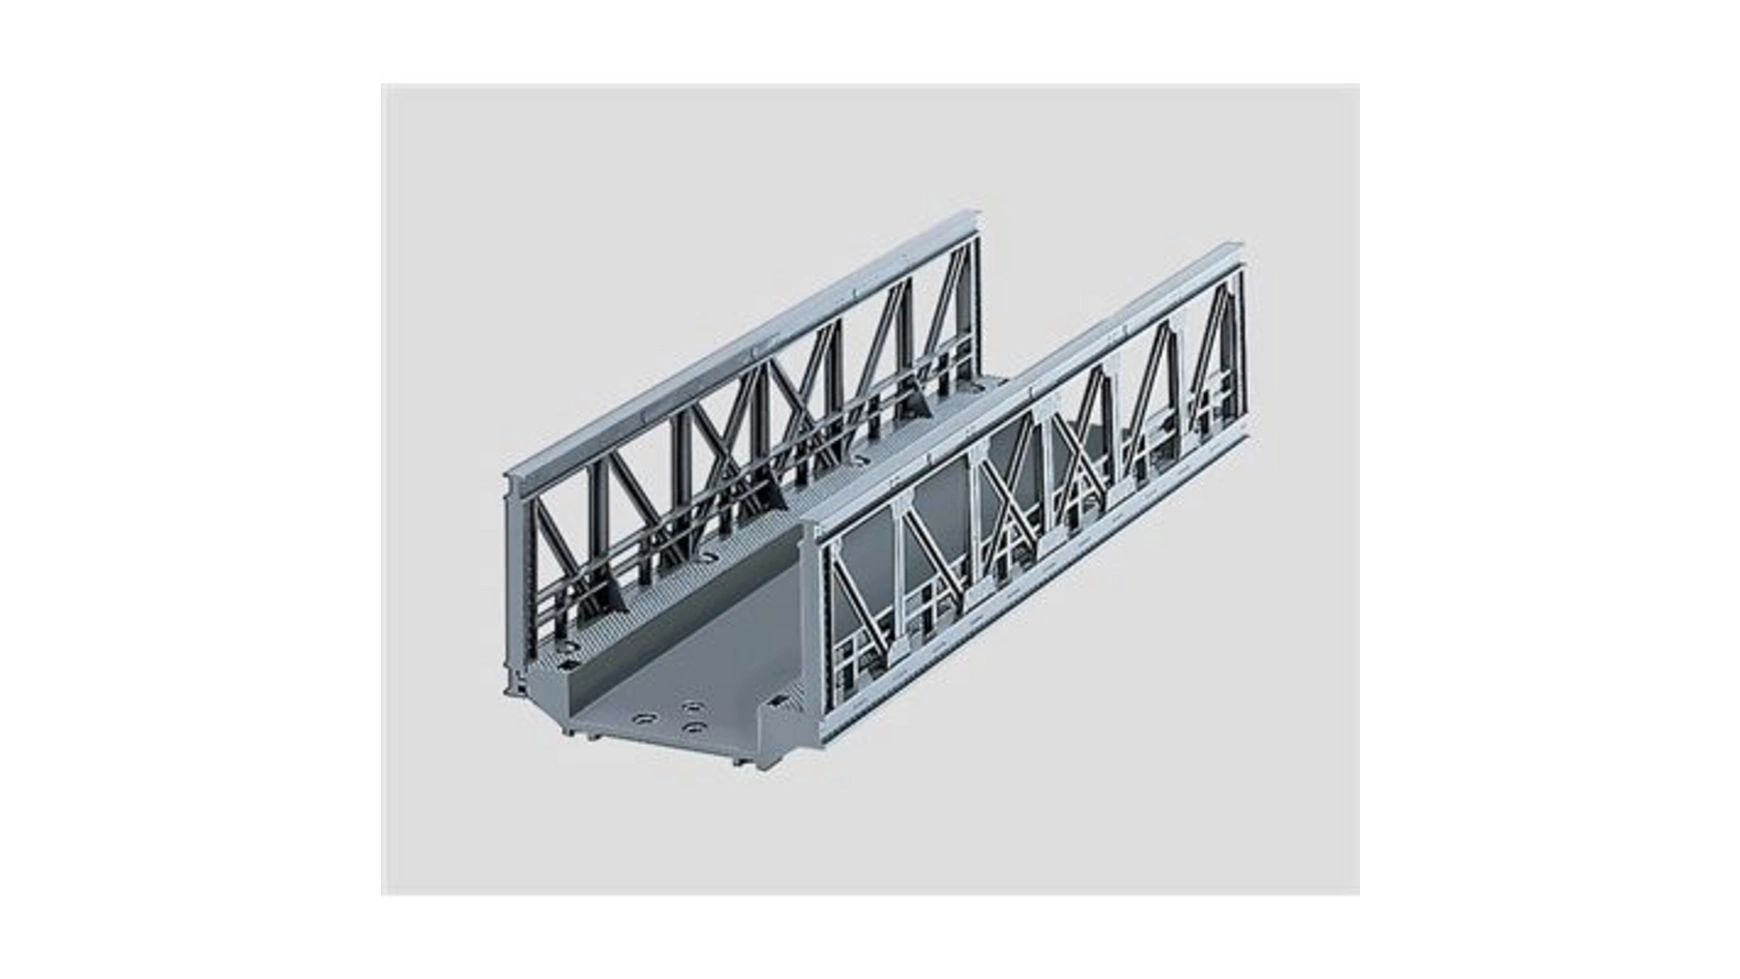 Мосты решетчатый мост 180 мм Märklin по обе сто моста сон о море русалки крымского моста сборник